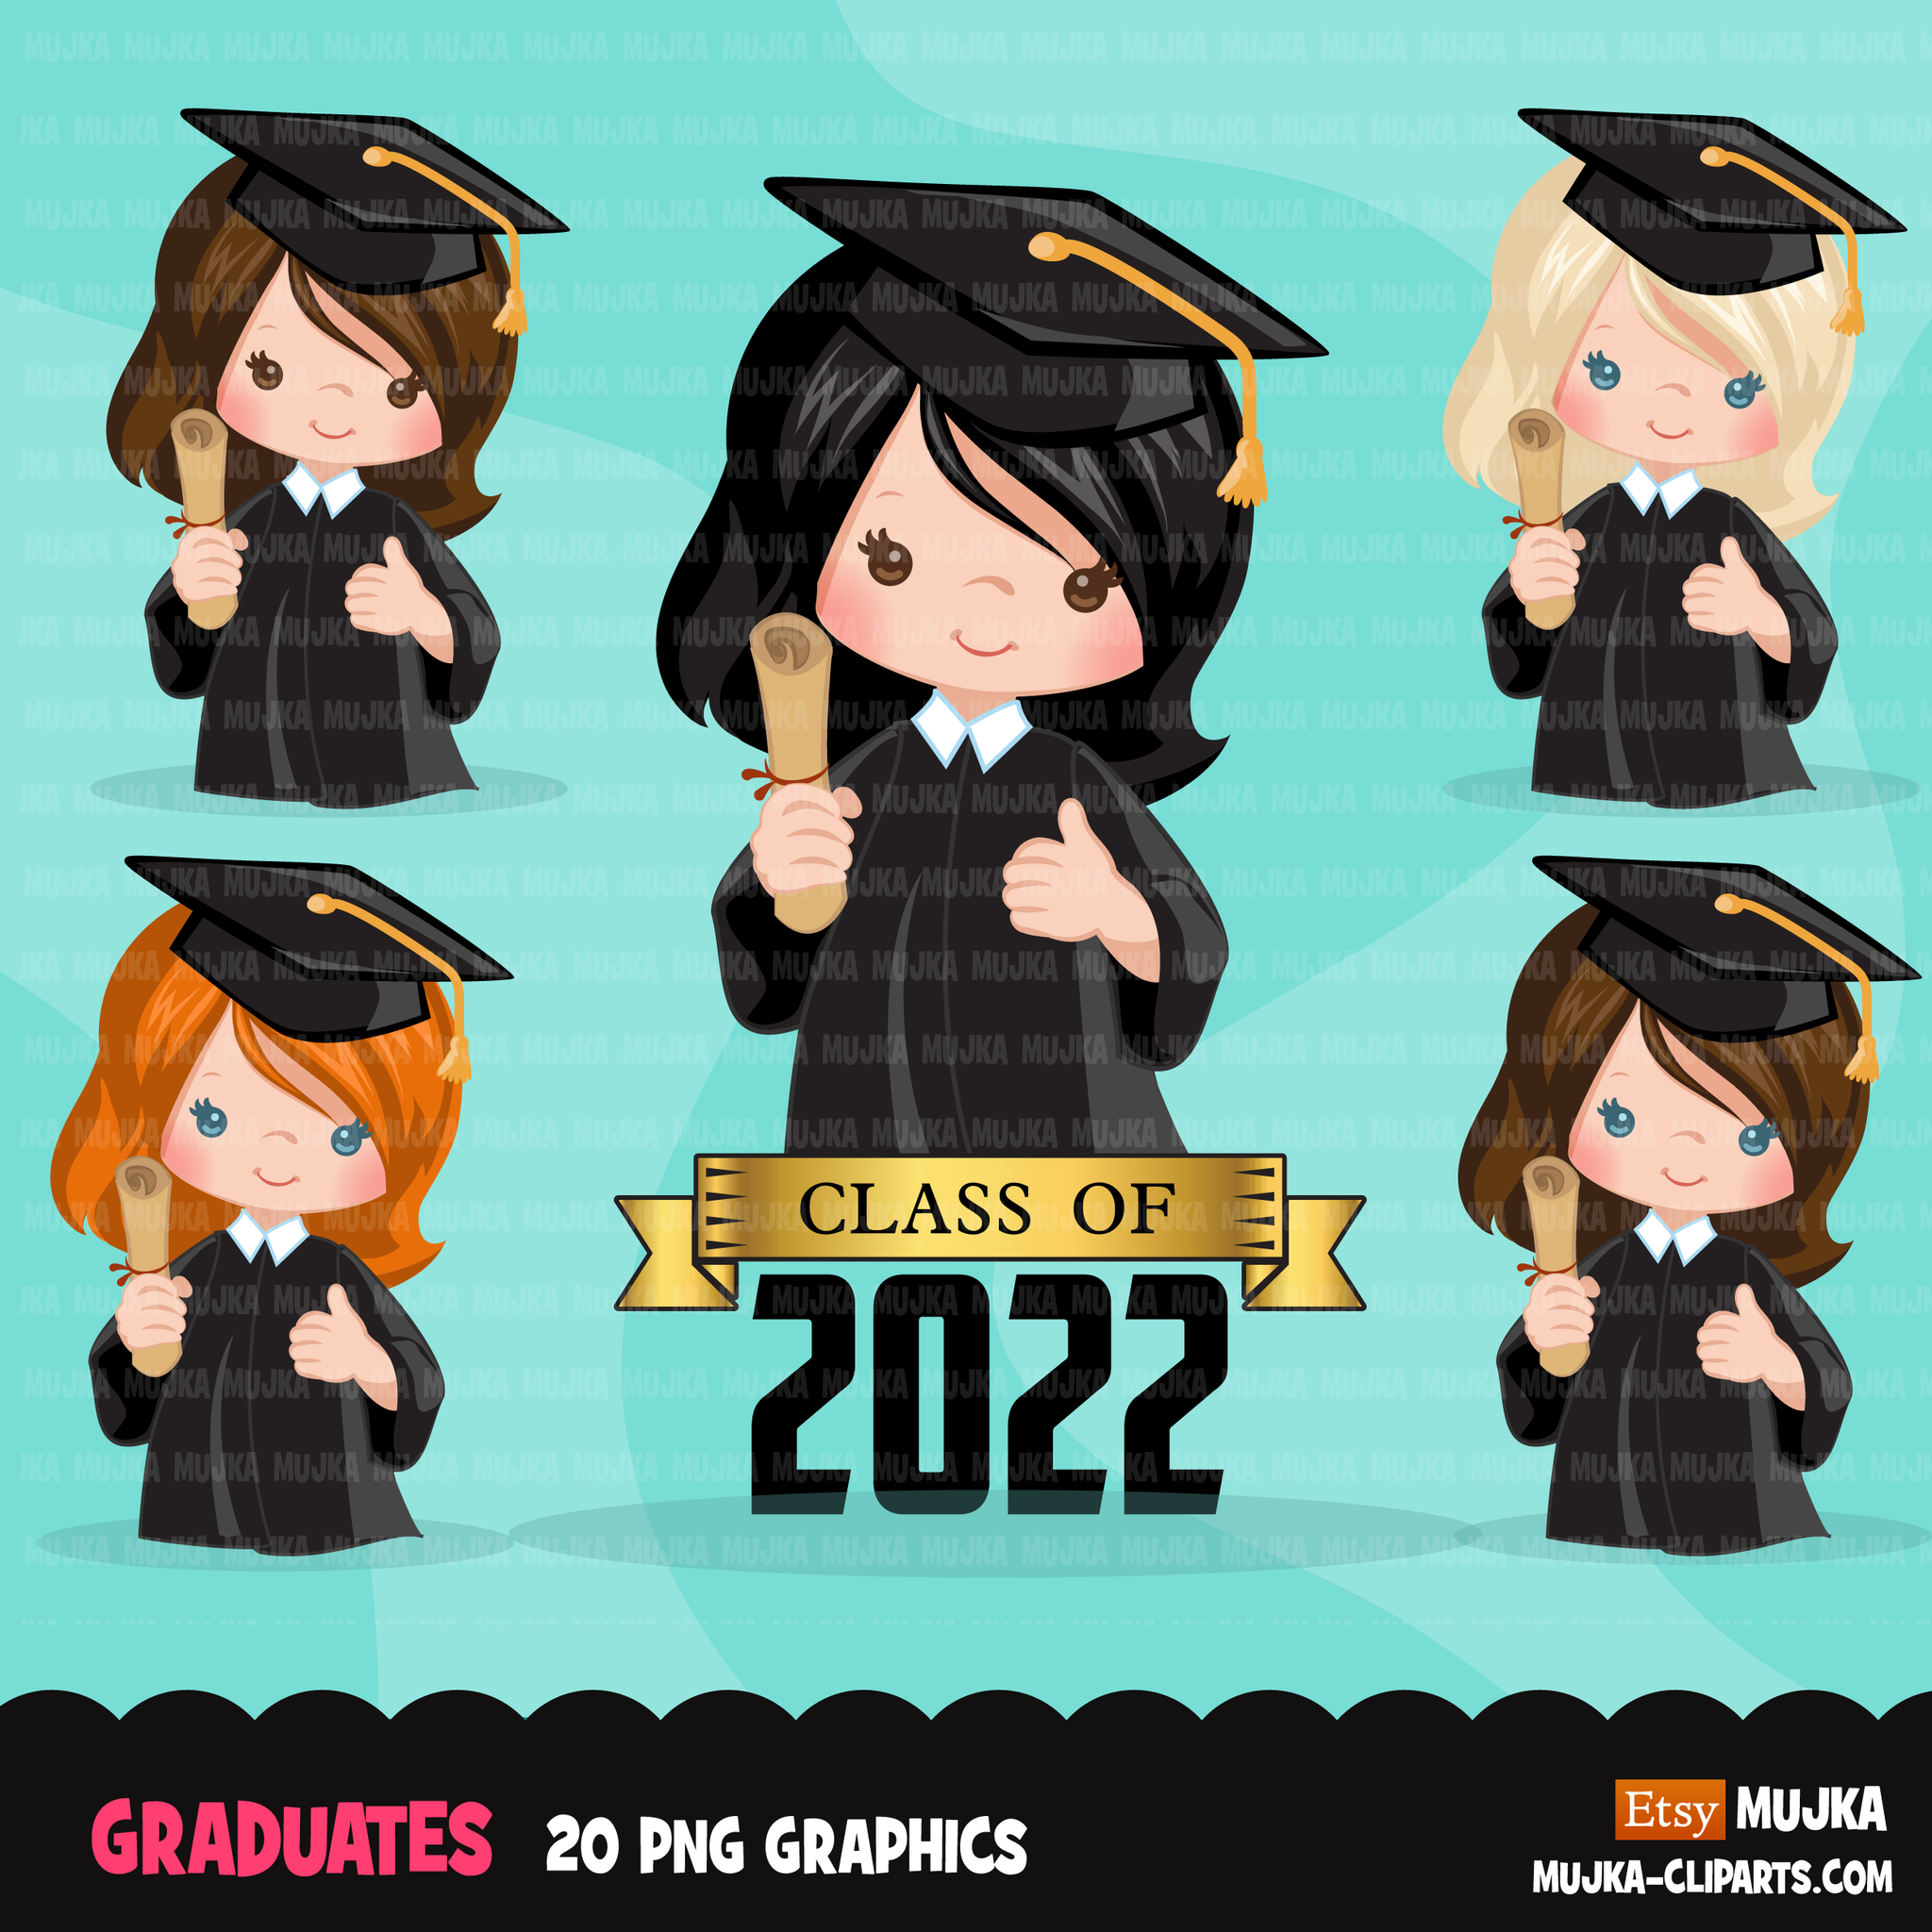 nyls graduation 2022 clipart